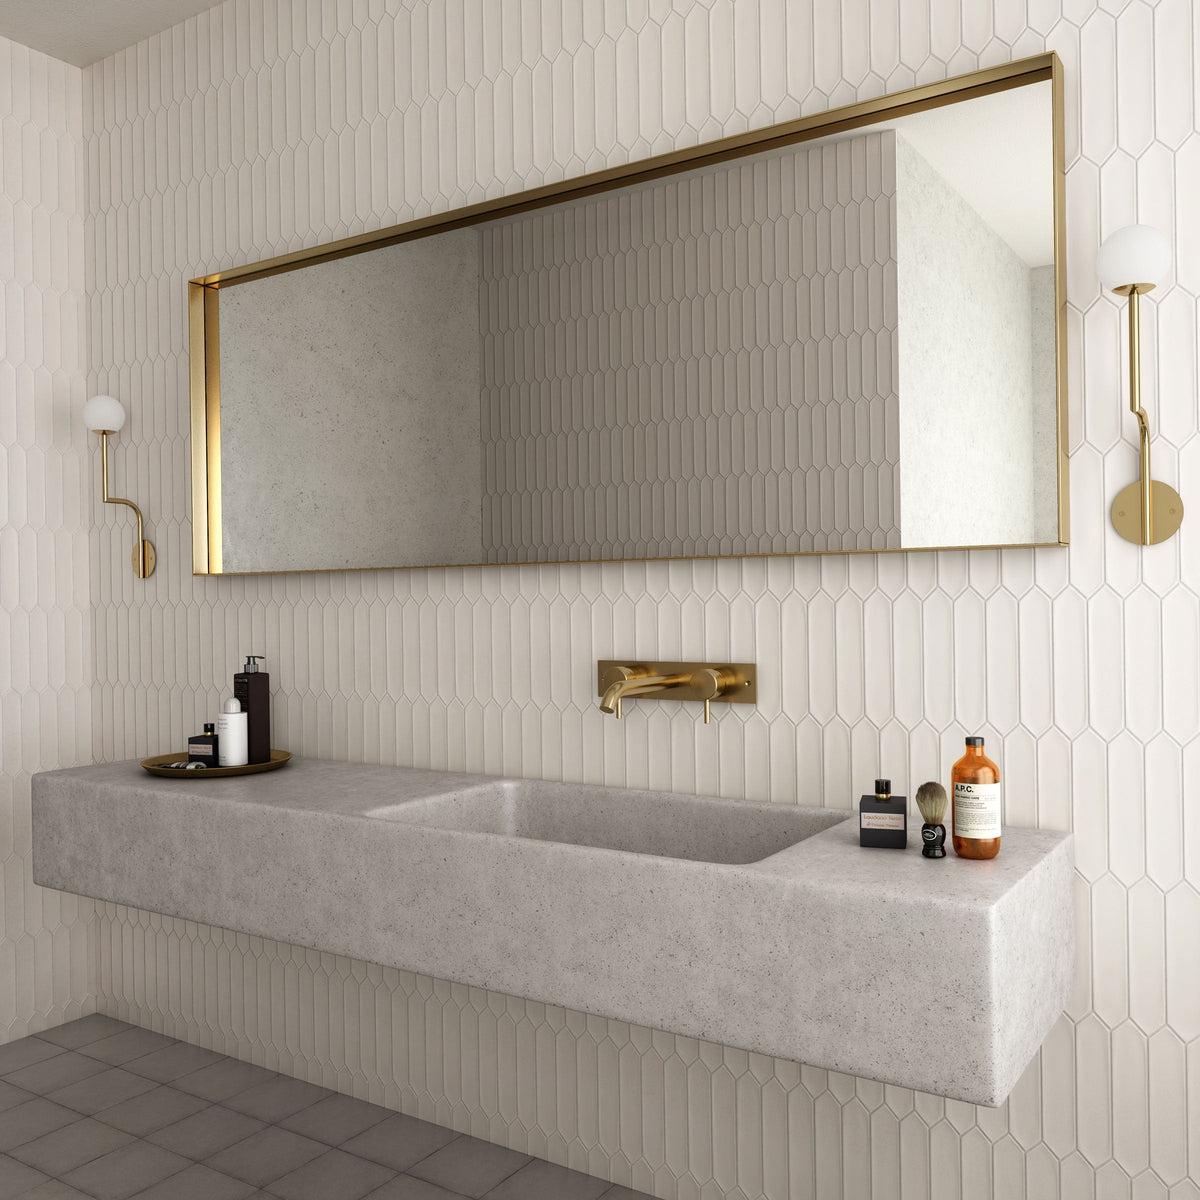 White ceramic picket tile bathroom tile